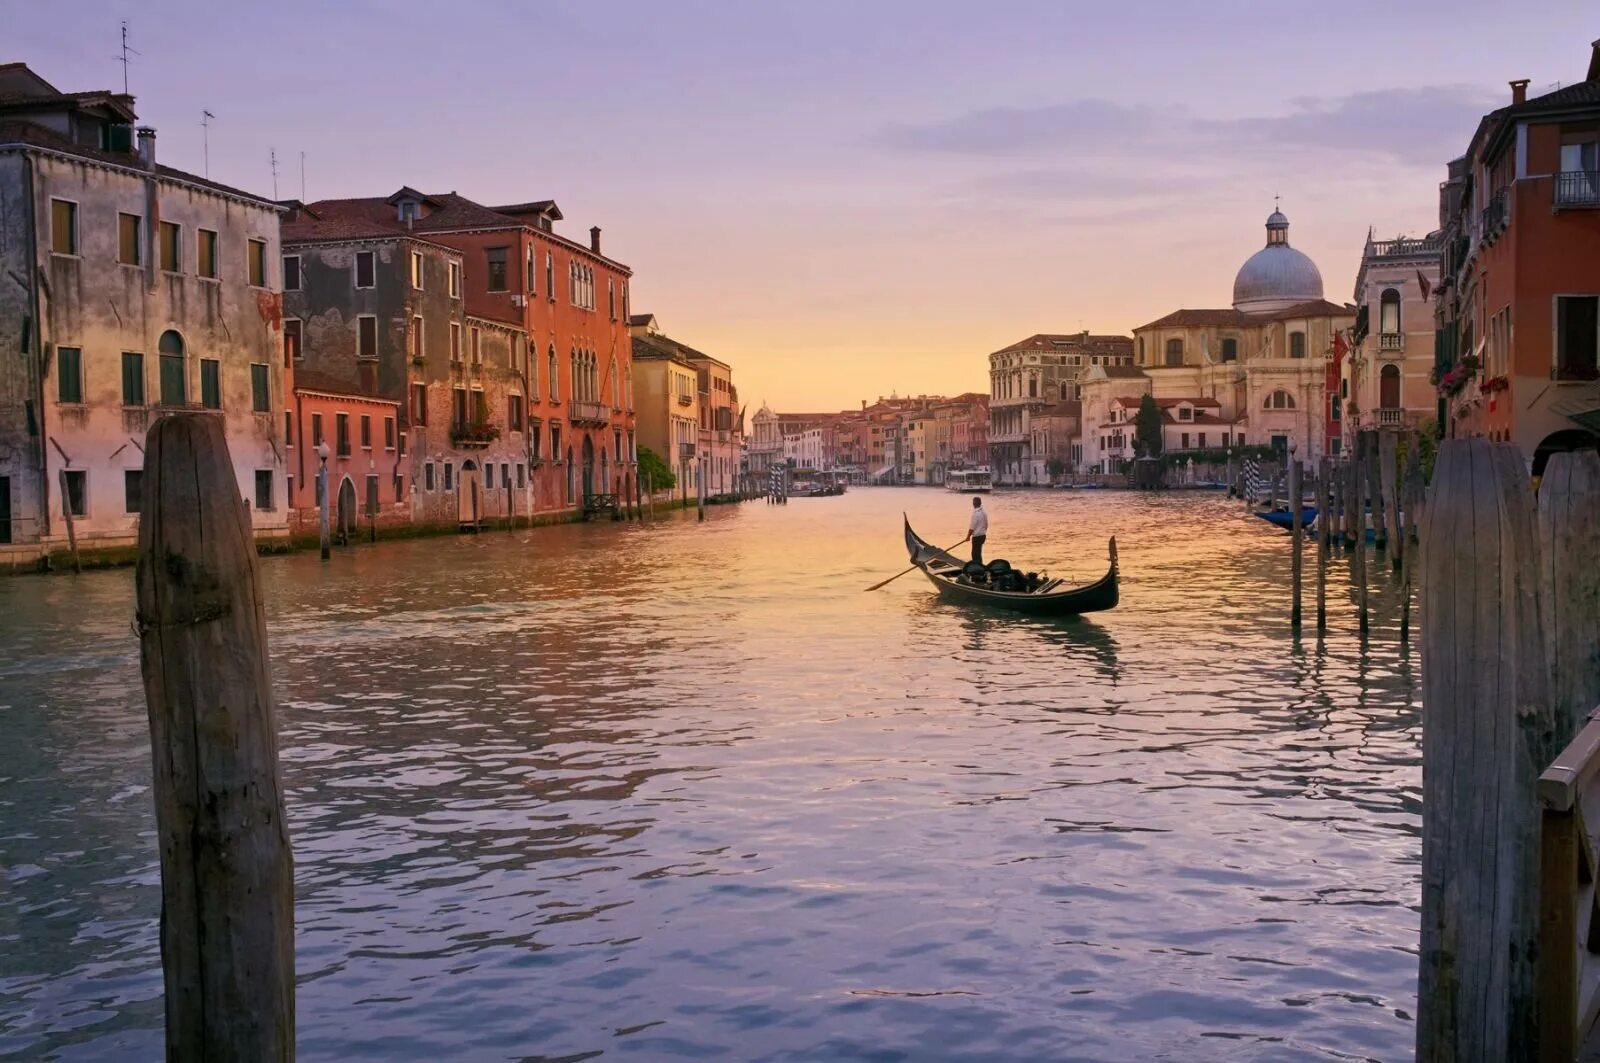 Италия гондольеры. Италия Венеция гондолы. Венеция каналы гондолы. Гранд канал Италия гондолы.